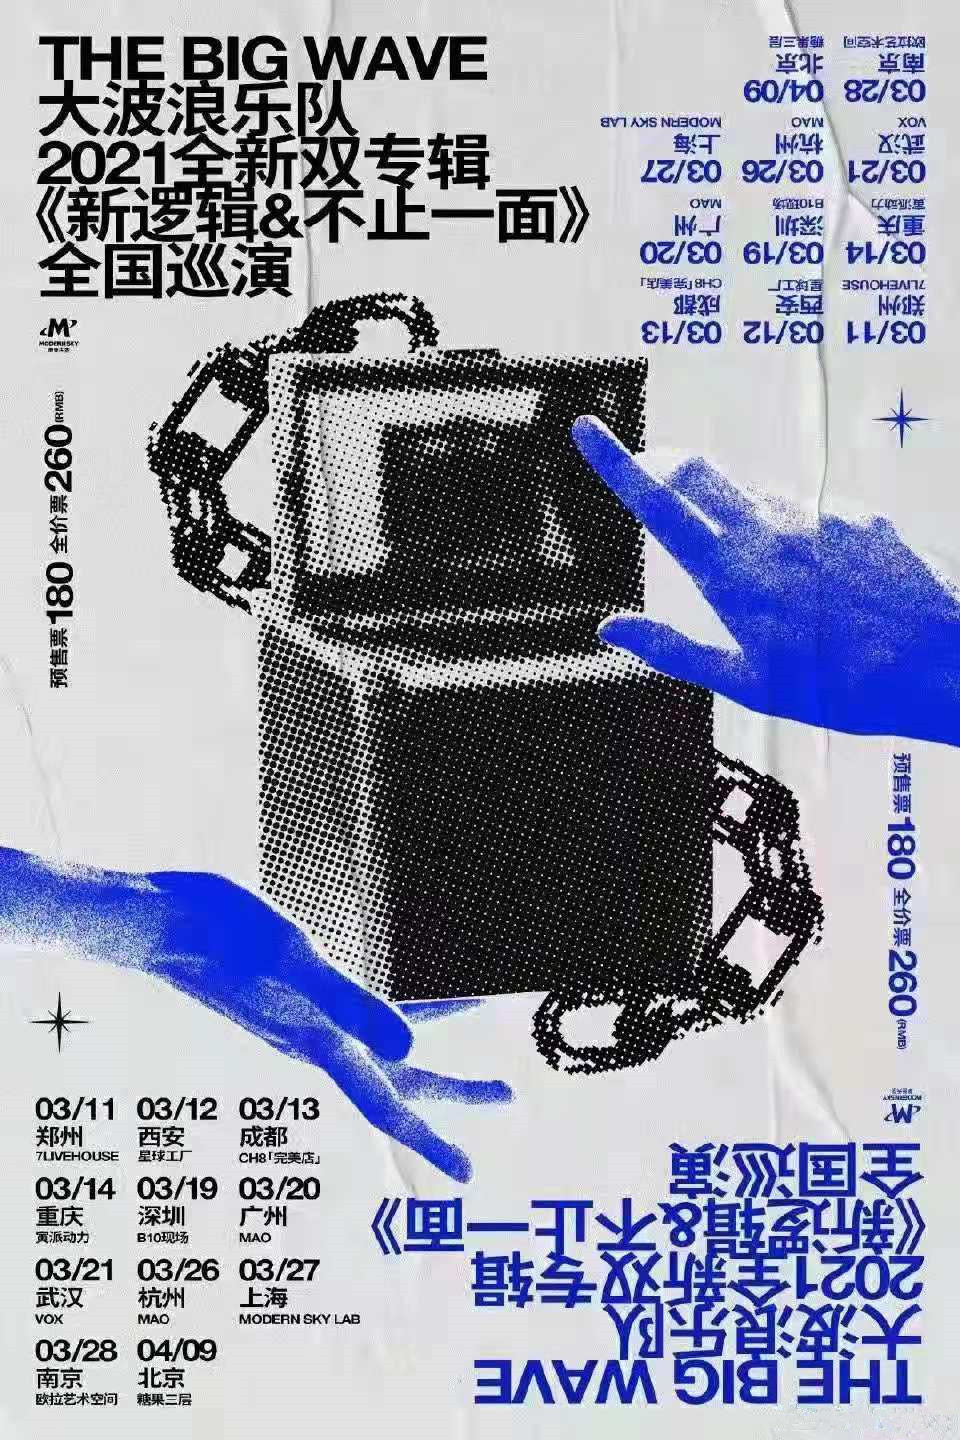 大波浪乐队2021全新双专辑巡演《新逻辑》《不止一面》全国巡演-北京站